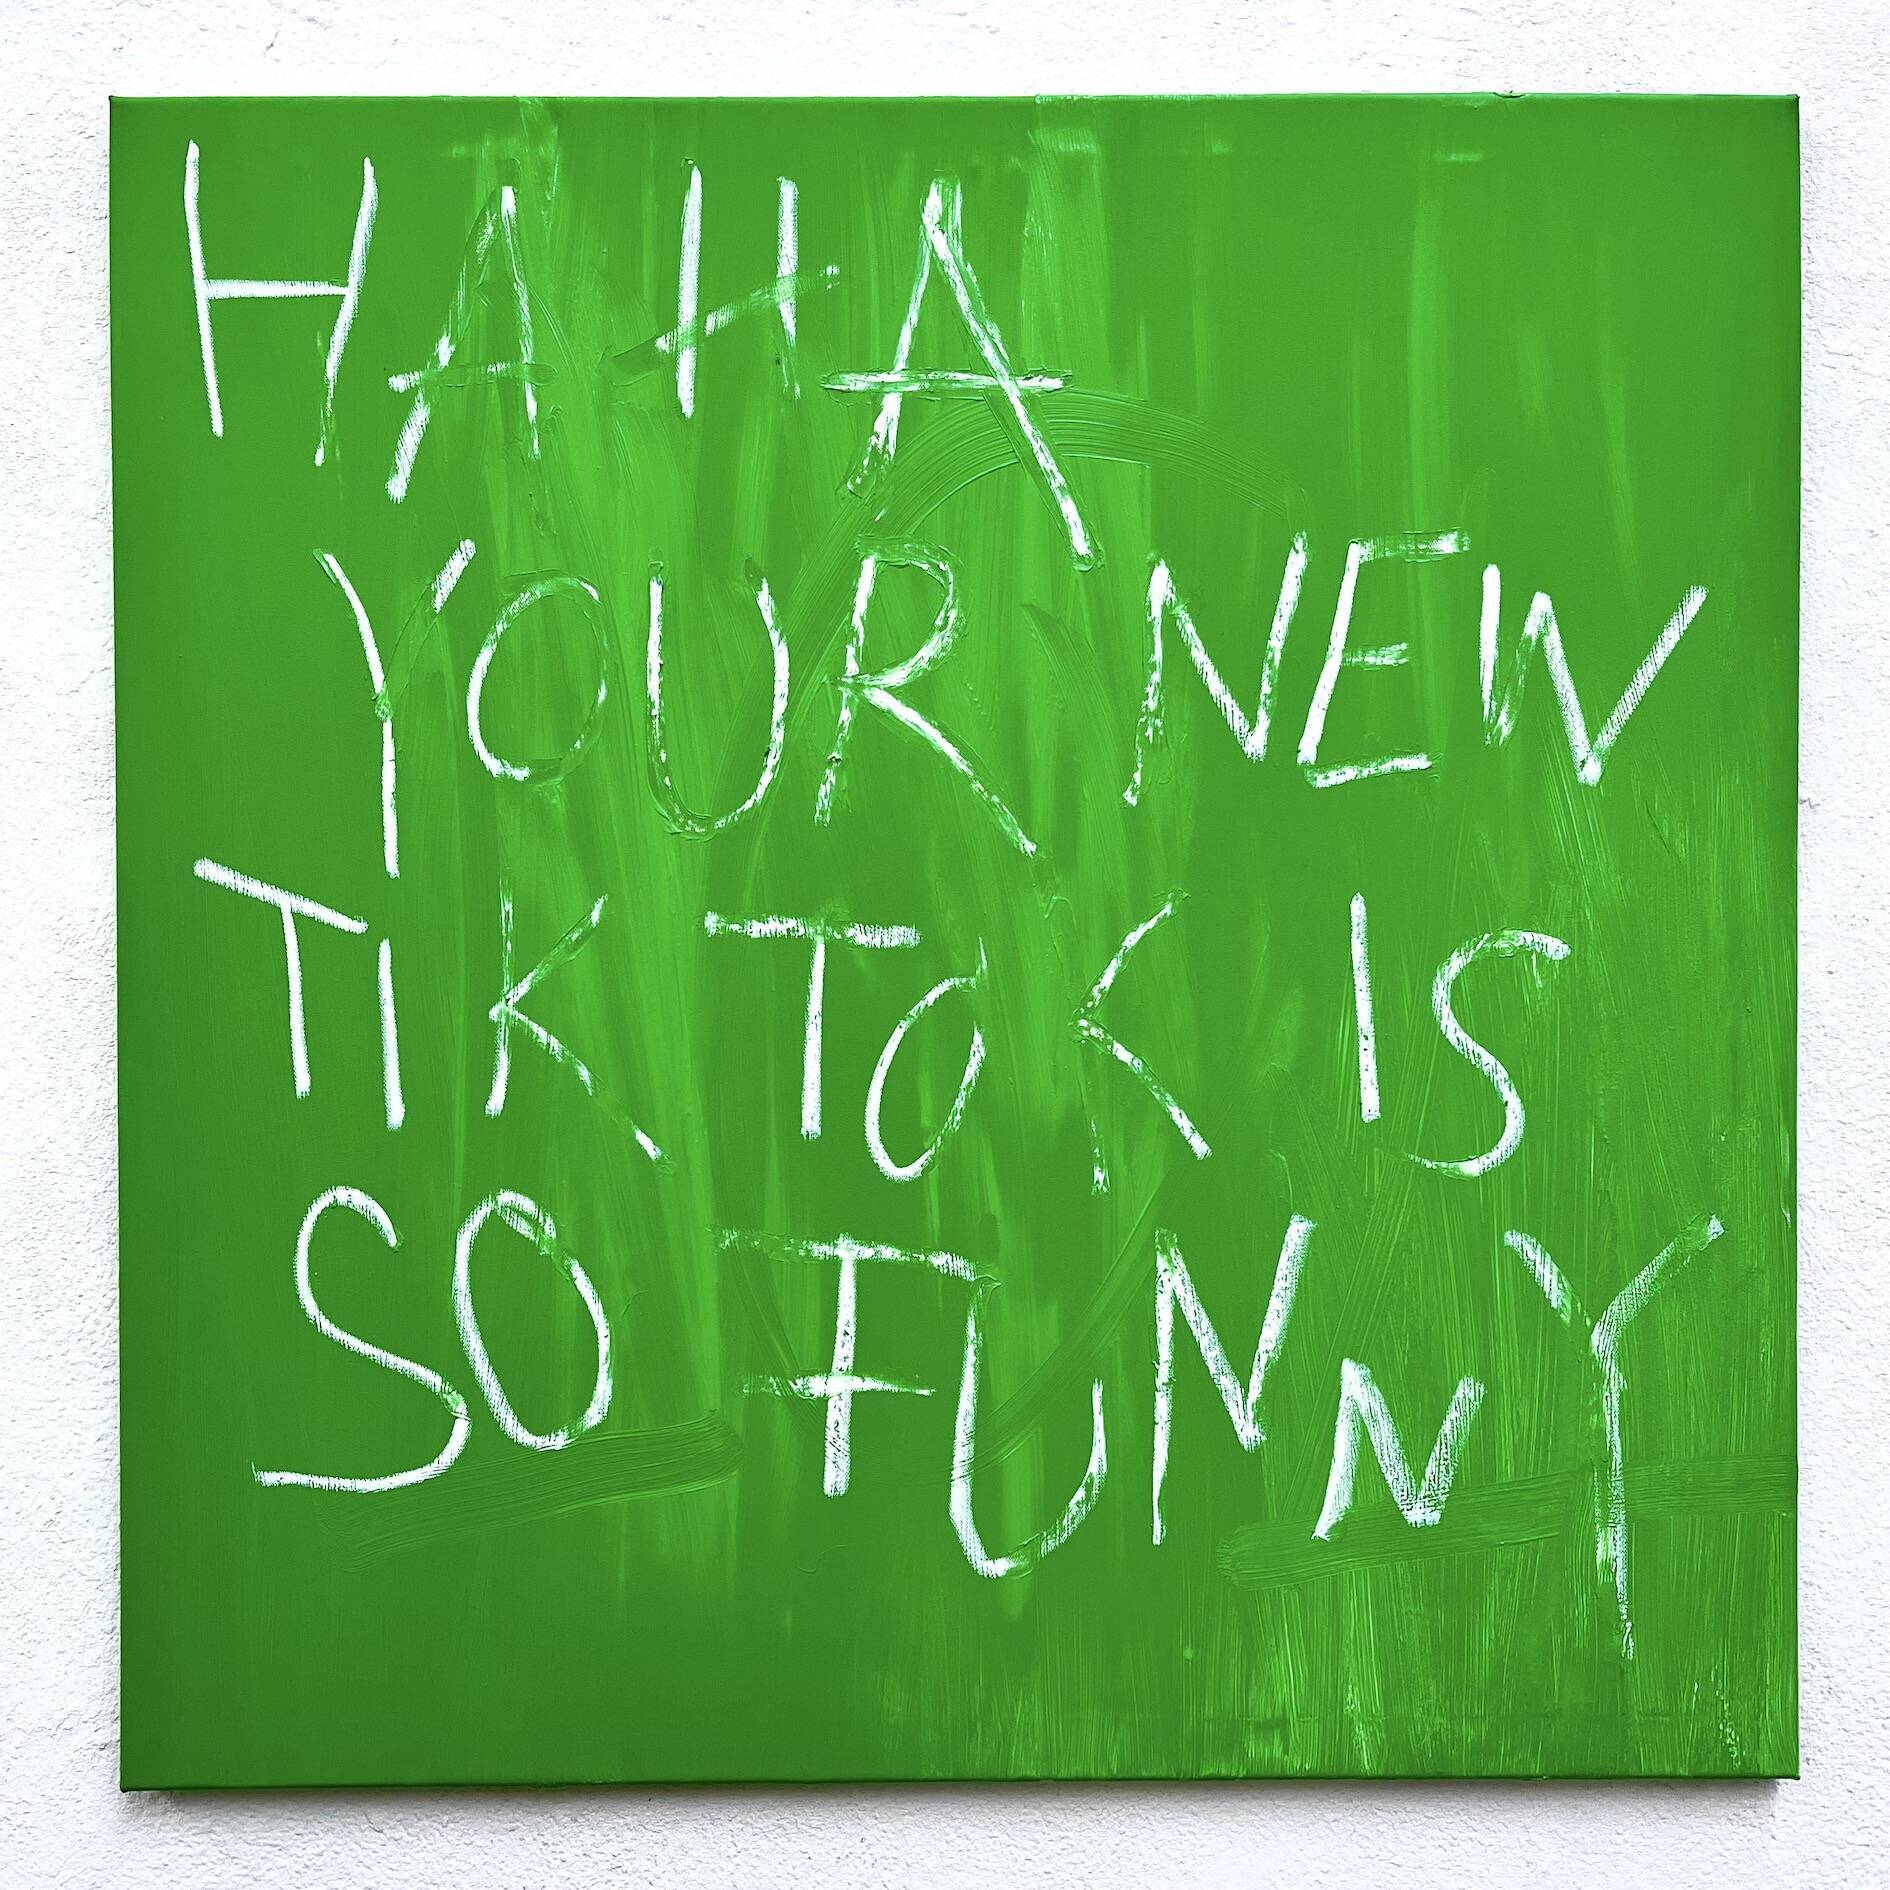 haha your new tiktok is so funny - Maximilian Dussmann 1